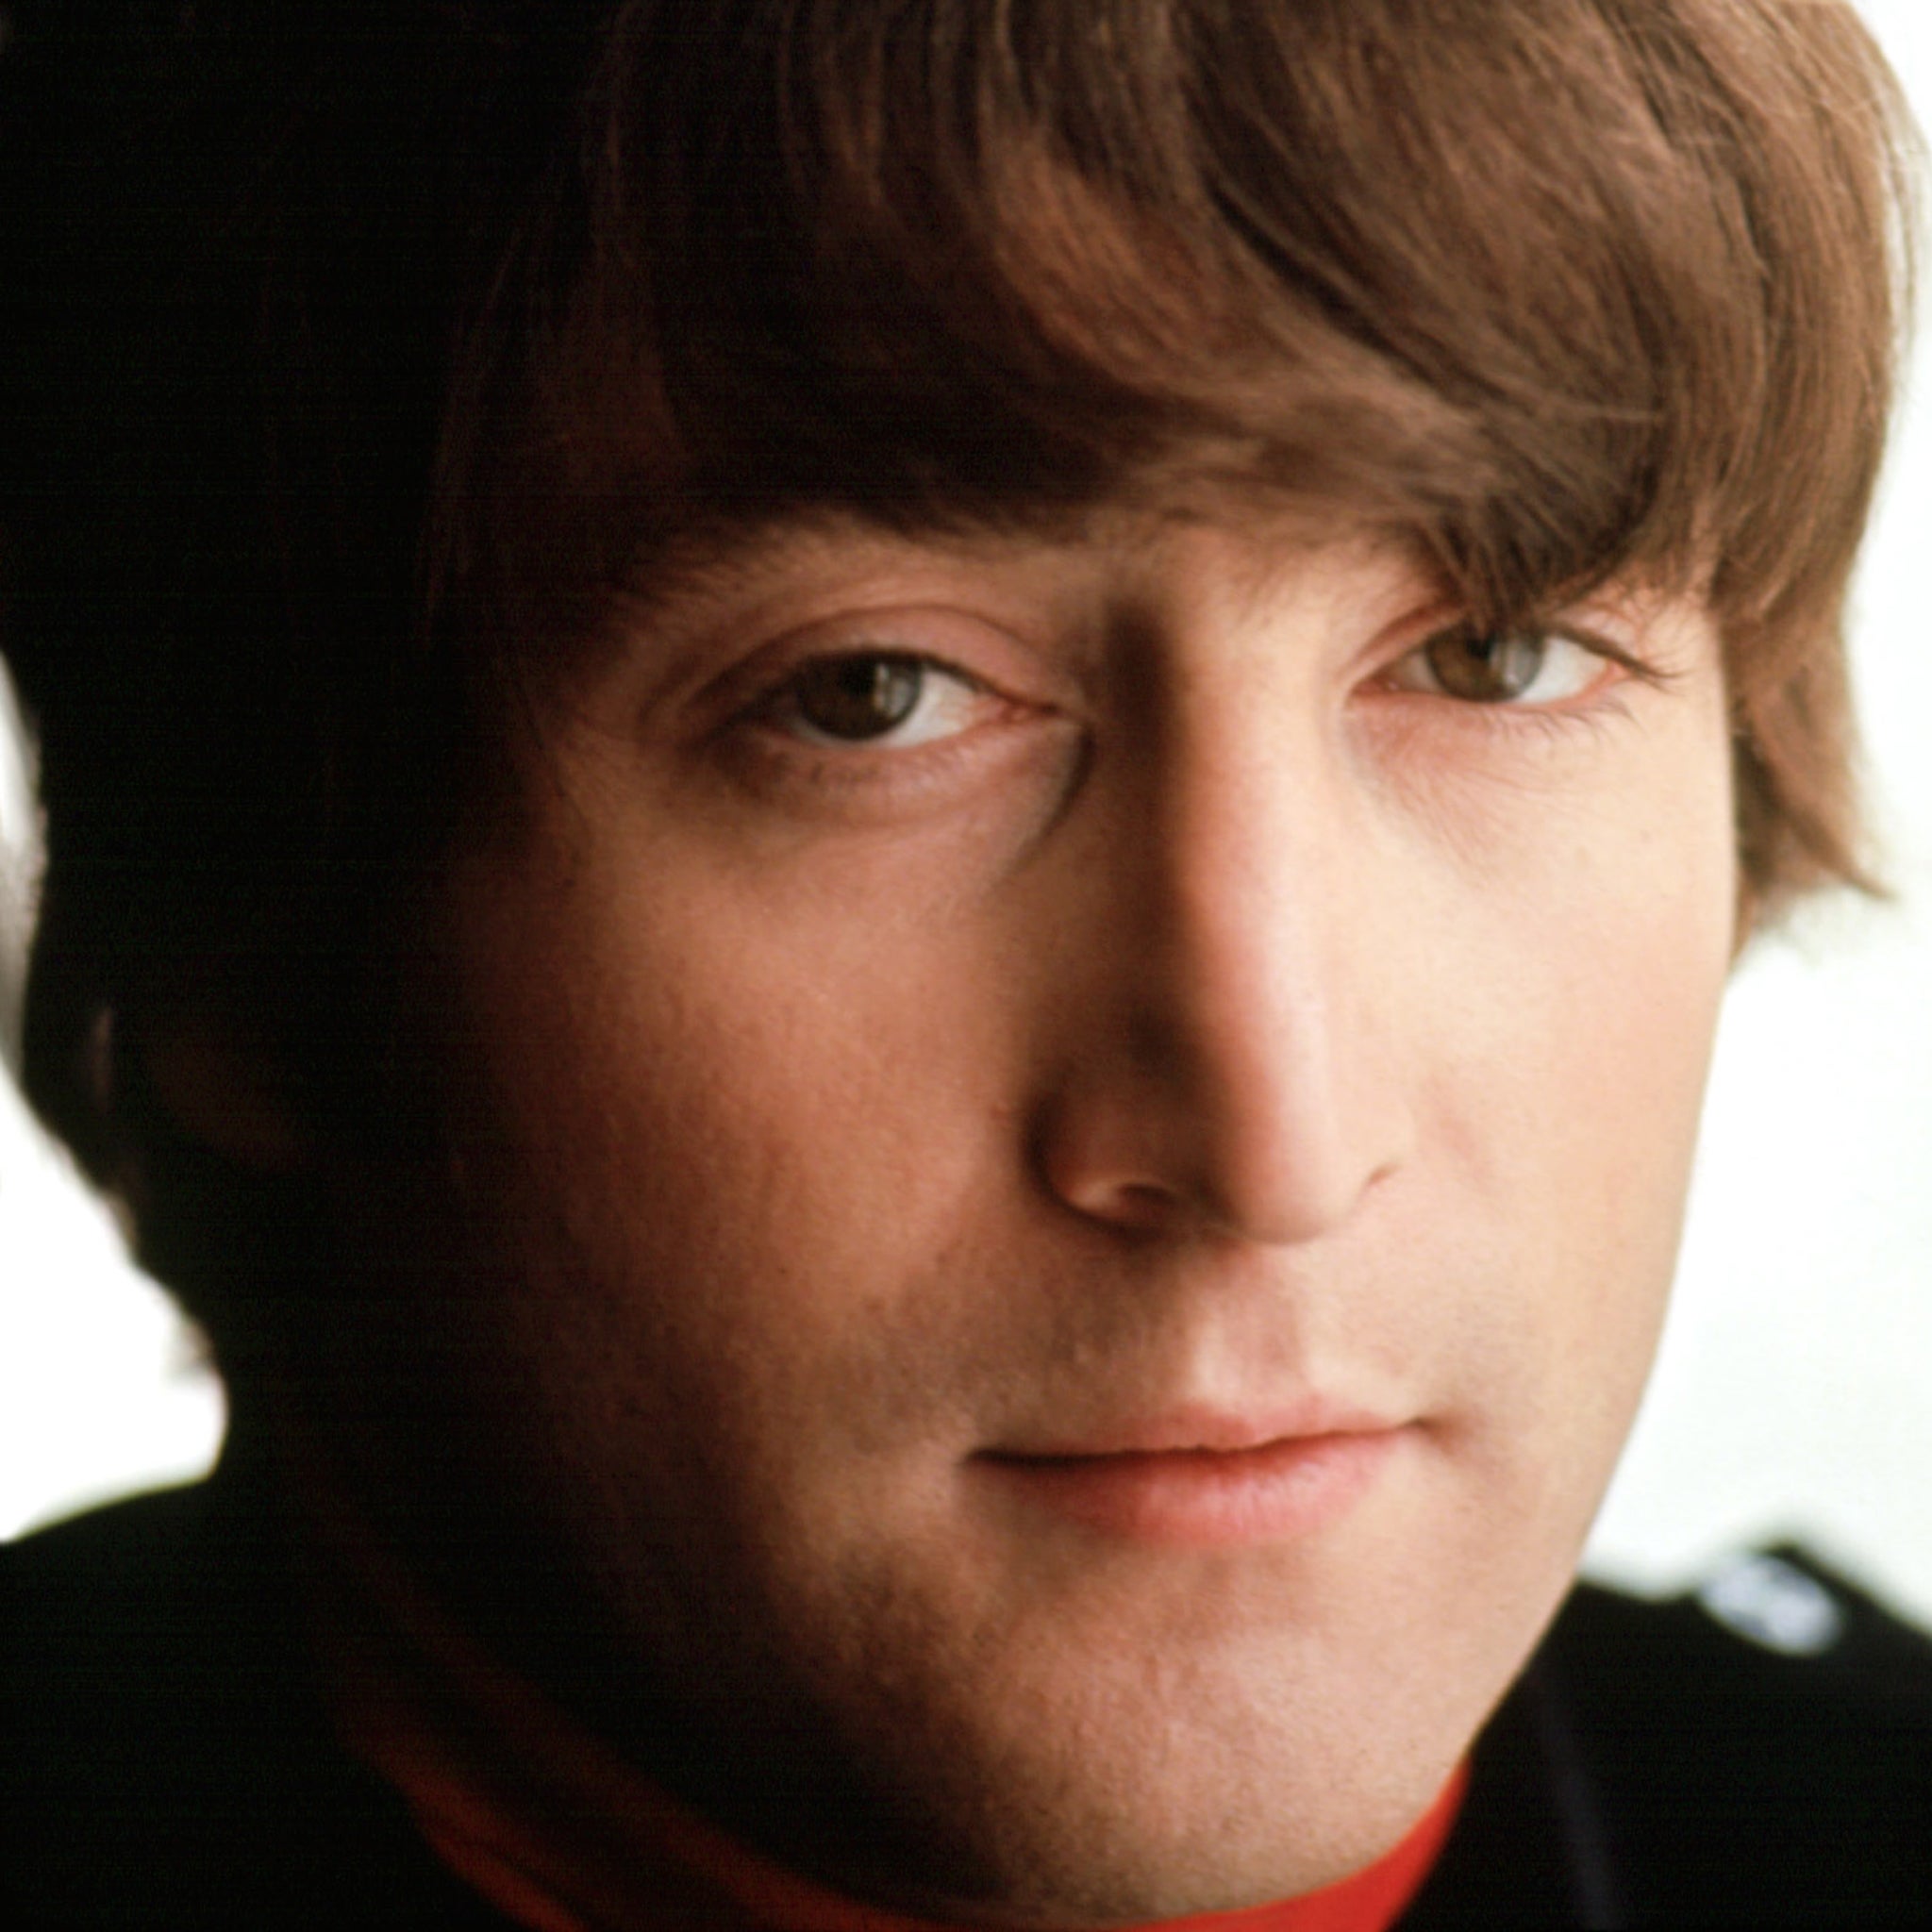 John Lennon in the early 1960s